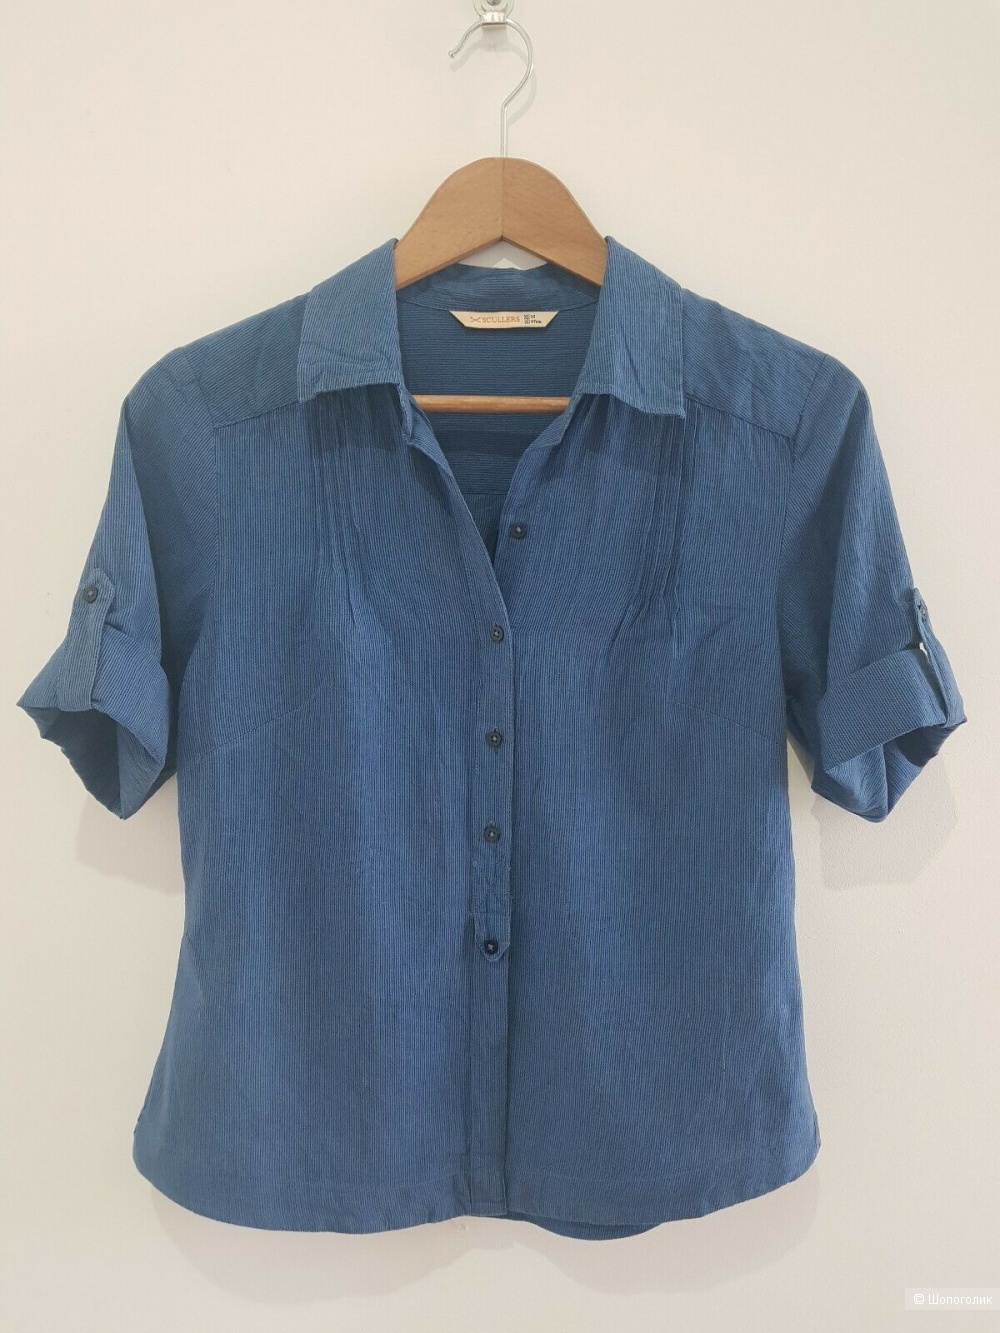 Блузка-рубашка из тонкого  хлопка, размер М, но маломерит.